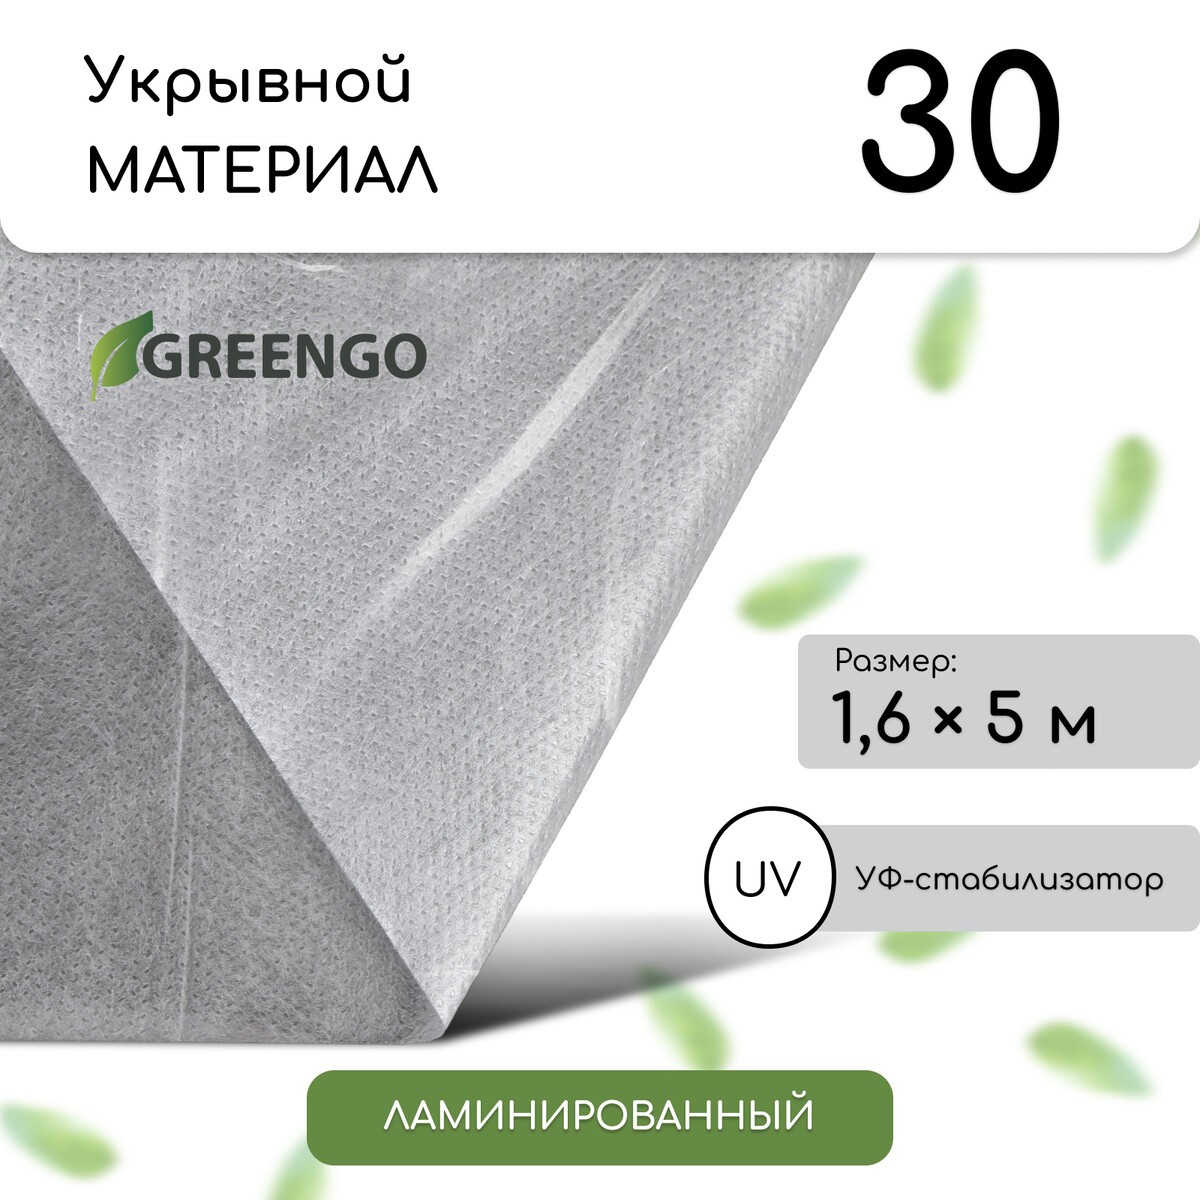 Материал укрывной, 5 × 1,6 м, ламинированный, плотность 30 г/м², спанбонд с уф-стабилизатором, белый, greengo Greengo